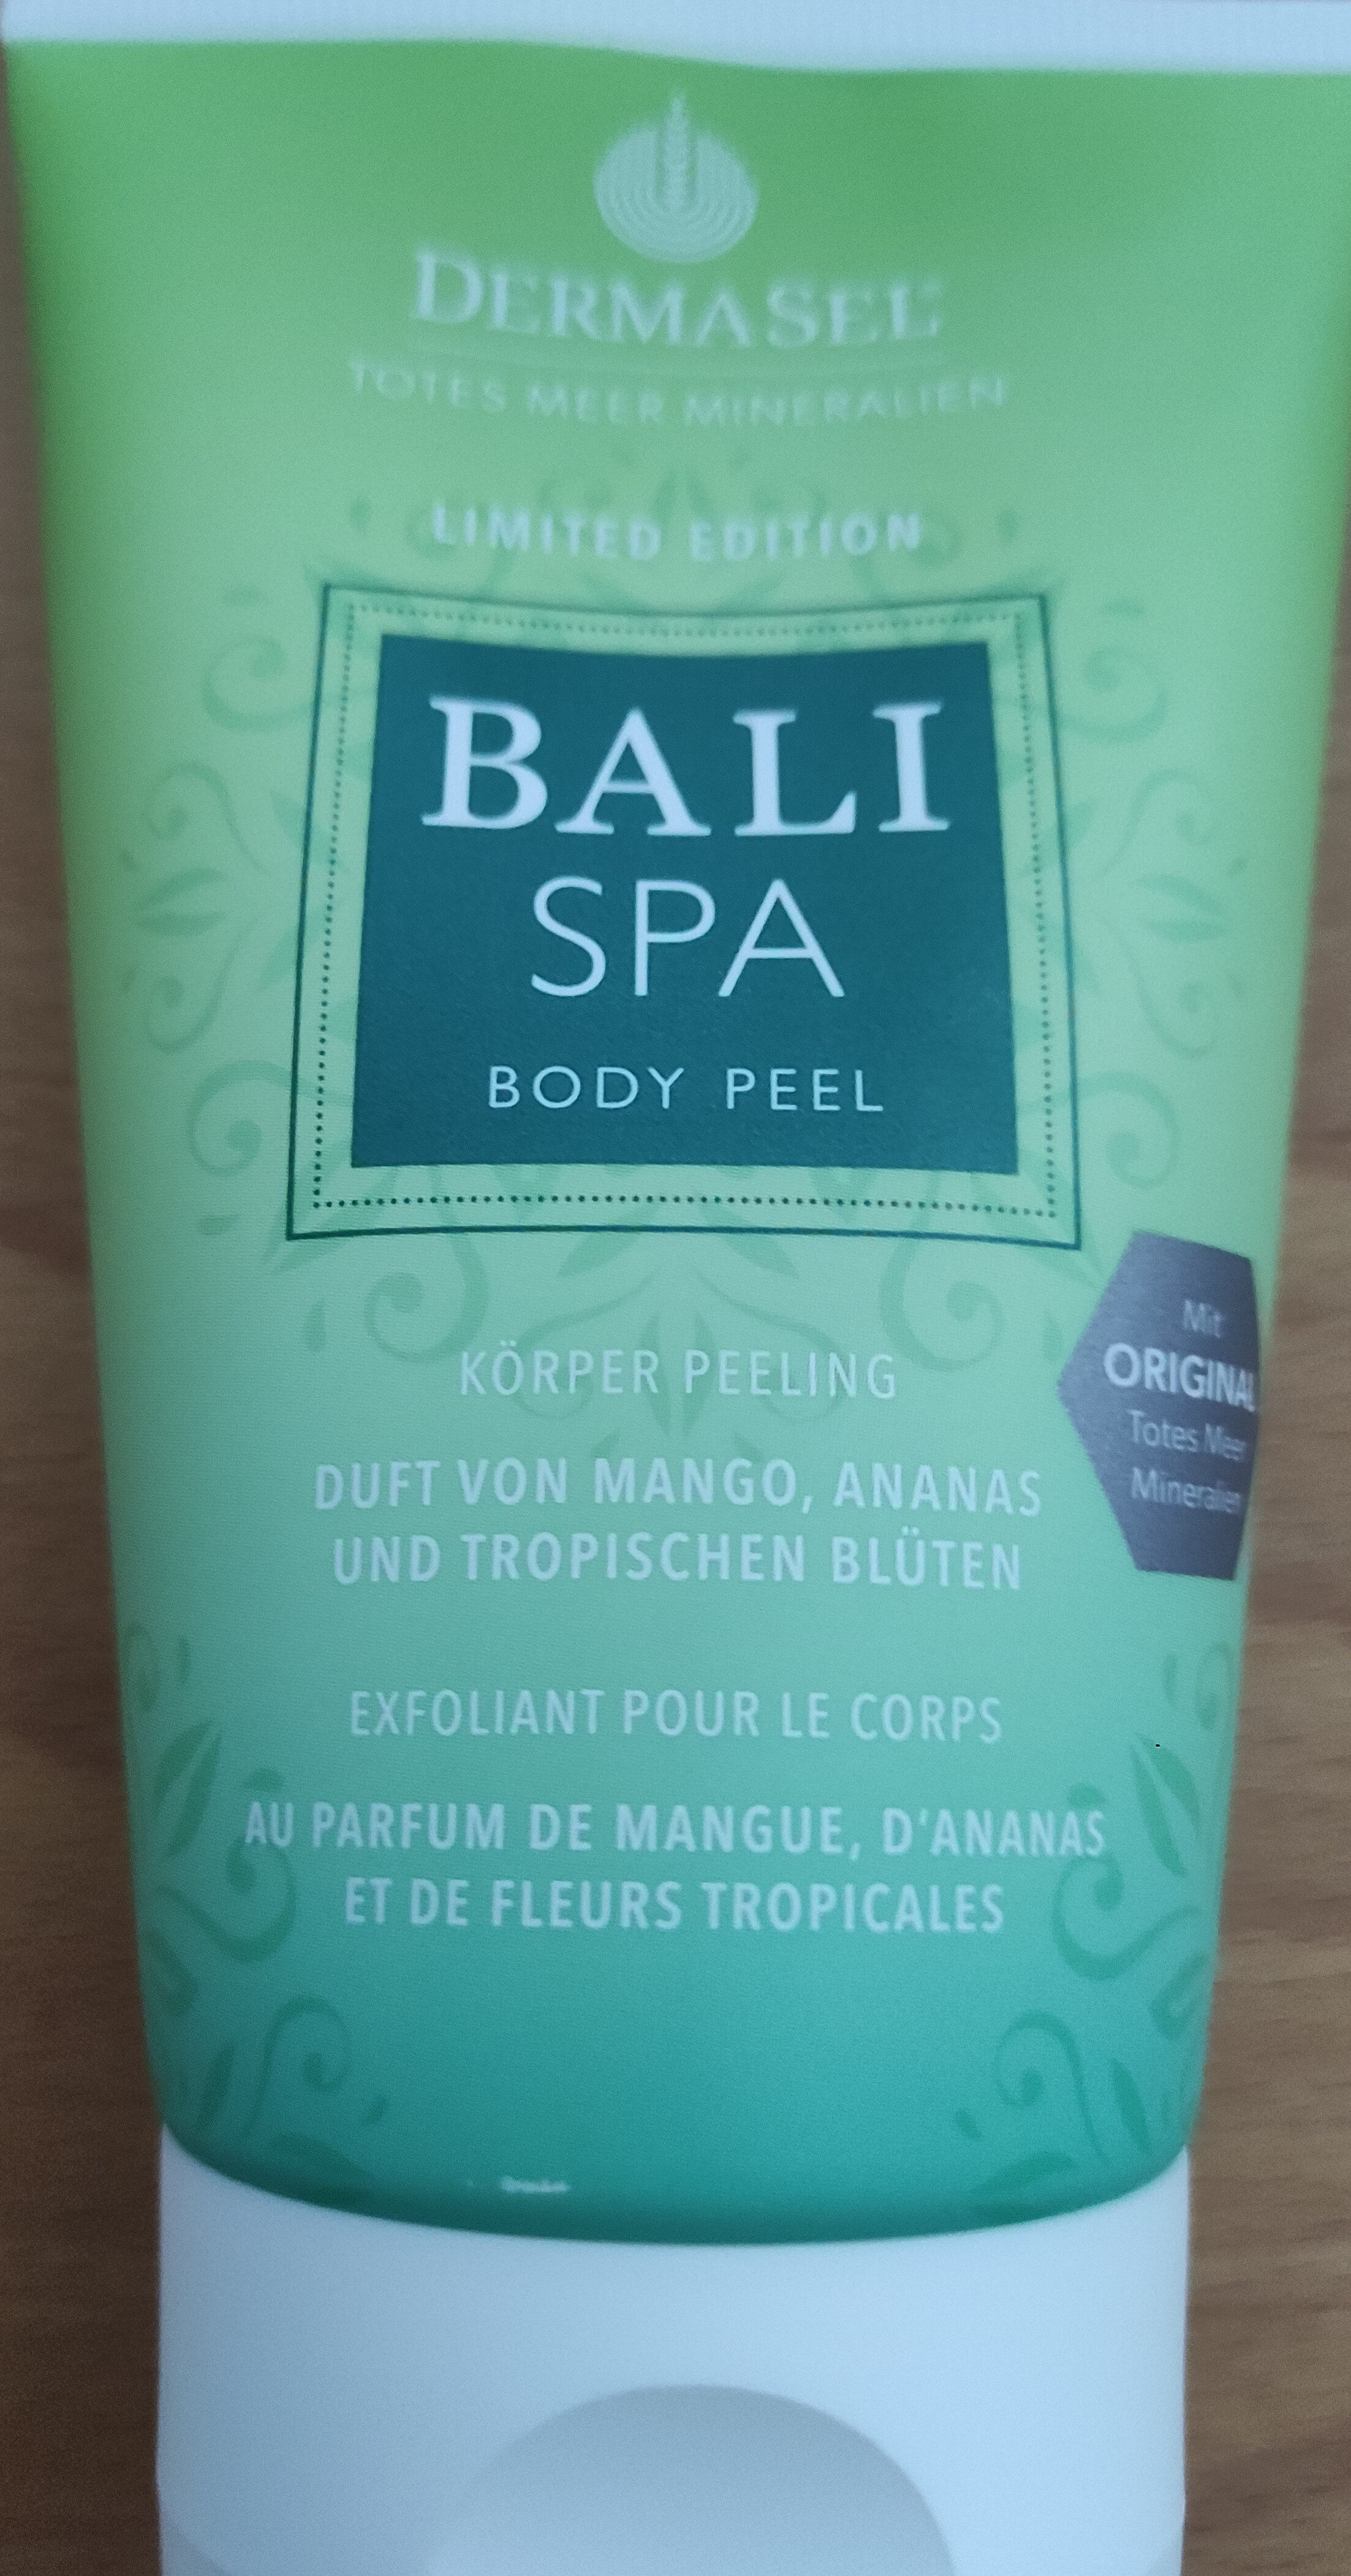 Dermasel Bali Spa Body Peel Körper Peeling - Product - de